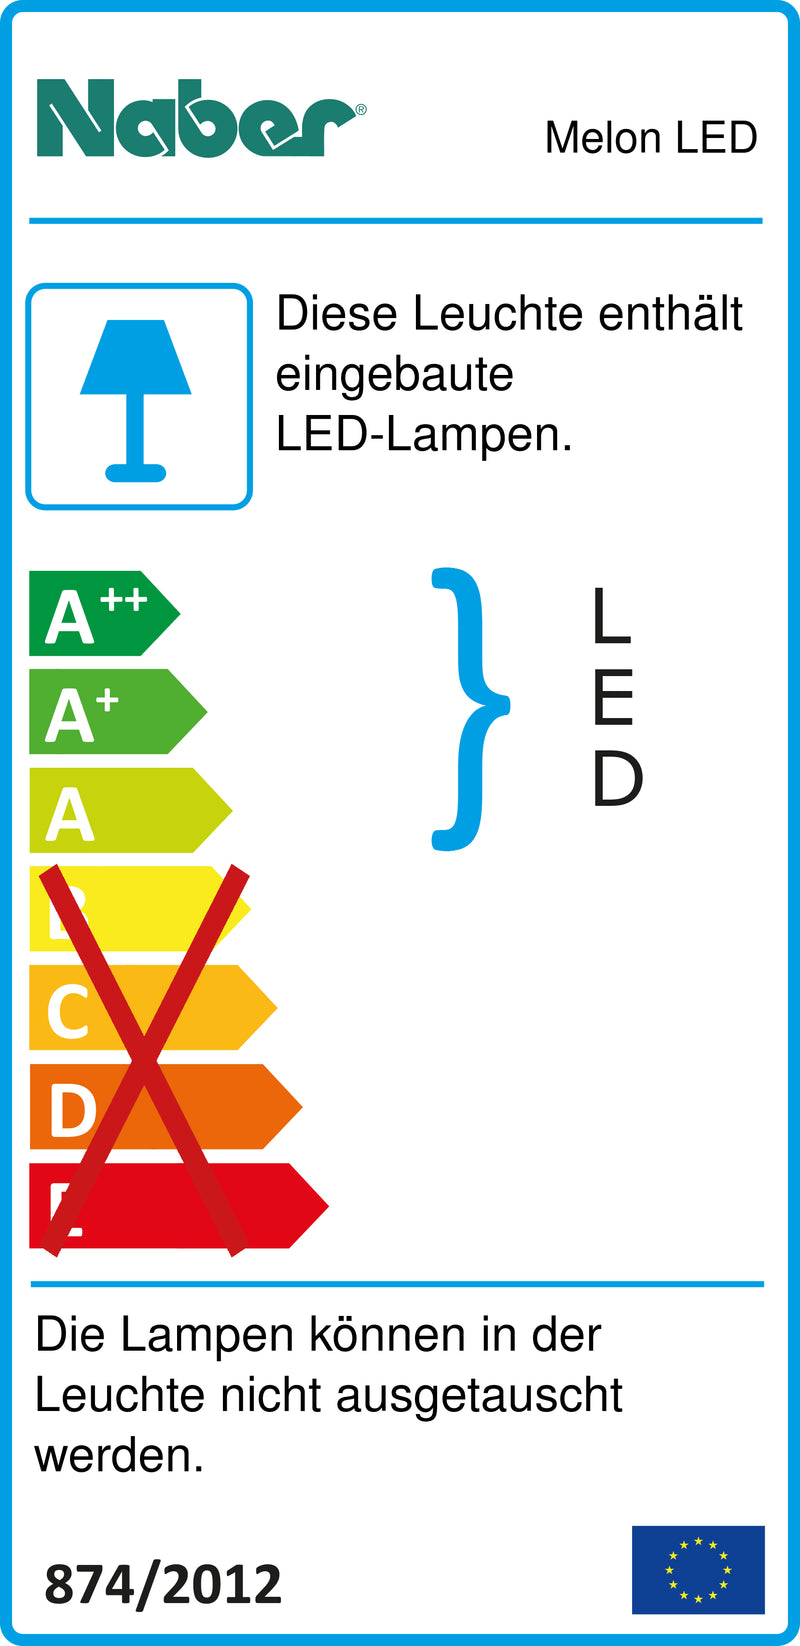 E-Label zu Zeichnung zu Melon LED als Variante 9 LED Strahler, L 900 mm, 13,5 W, edelstahlfarbig von Naber GmbH in der Kategorie Lichttechnik in Österreich auf conceptshop.at